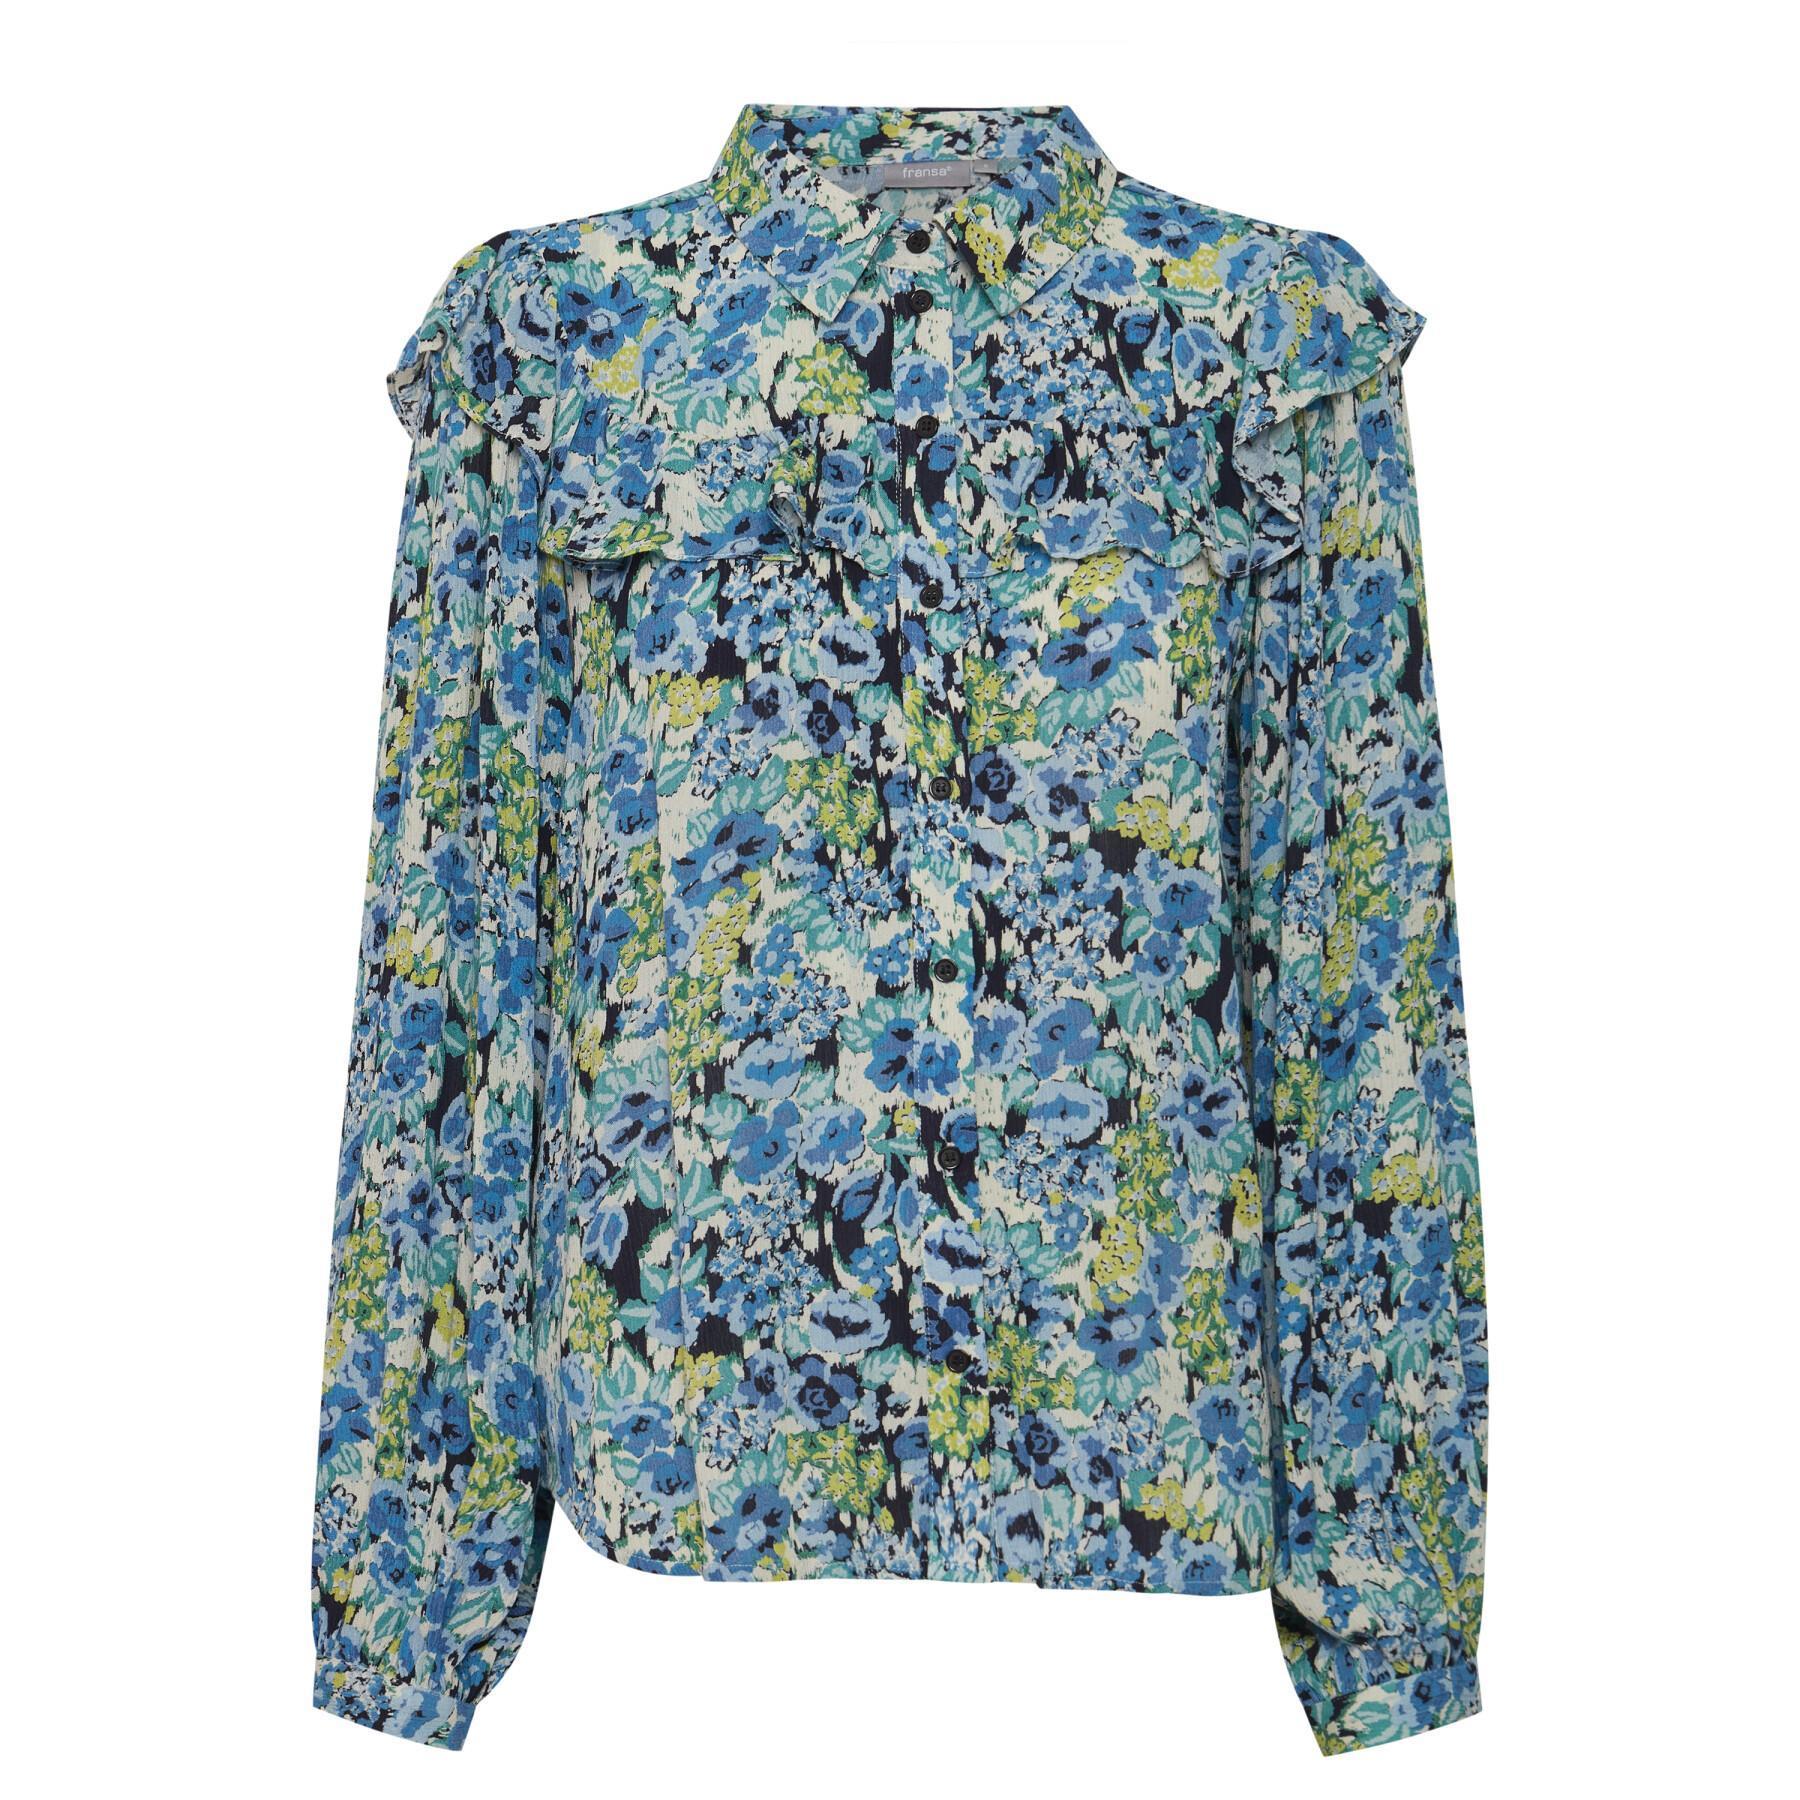 Women's blouse fransa Nynne 1